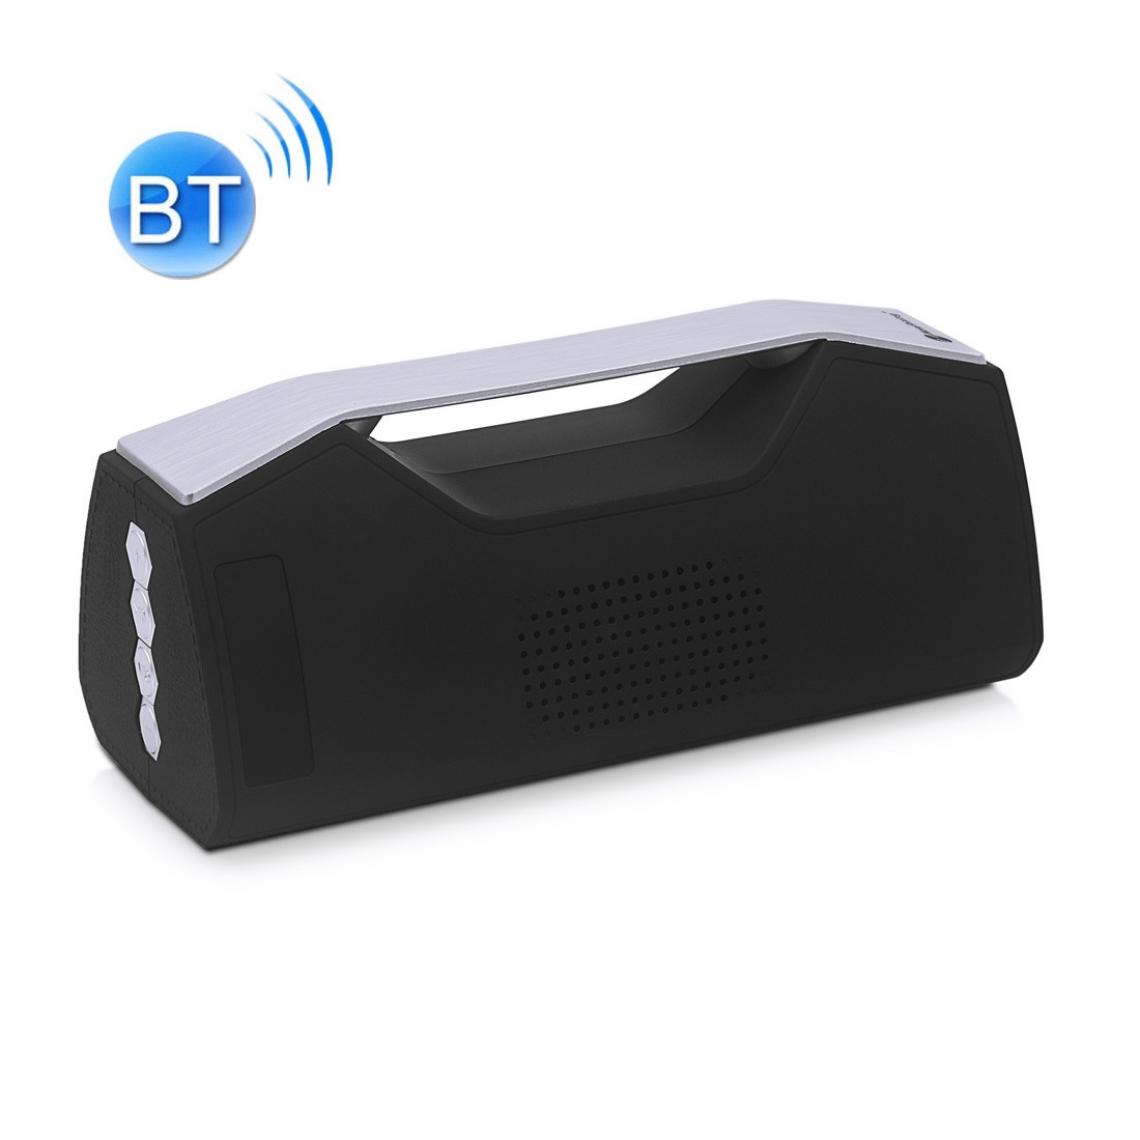 Wewoo - Enceinte Bluetooth NR-2028 Portable Lighting Haut-parleur stéréo sans fil Support Fonction TWS Noir - Enceintes Hifi